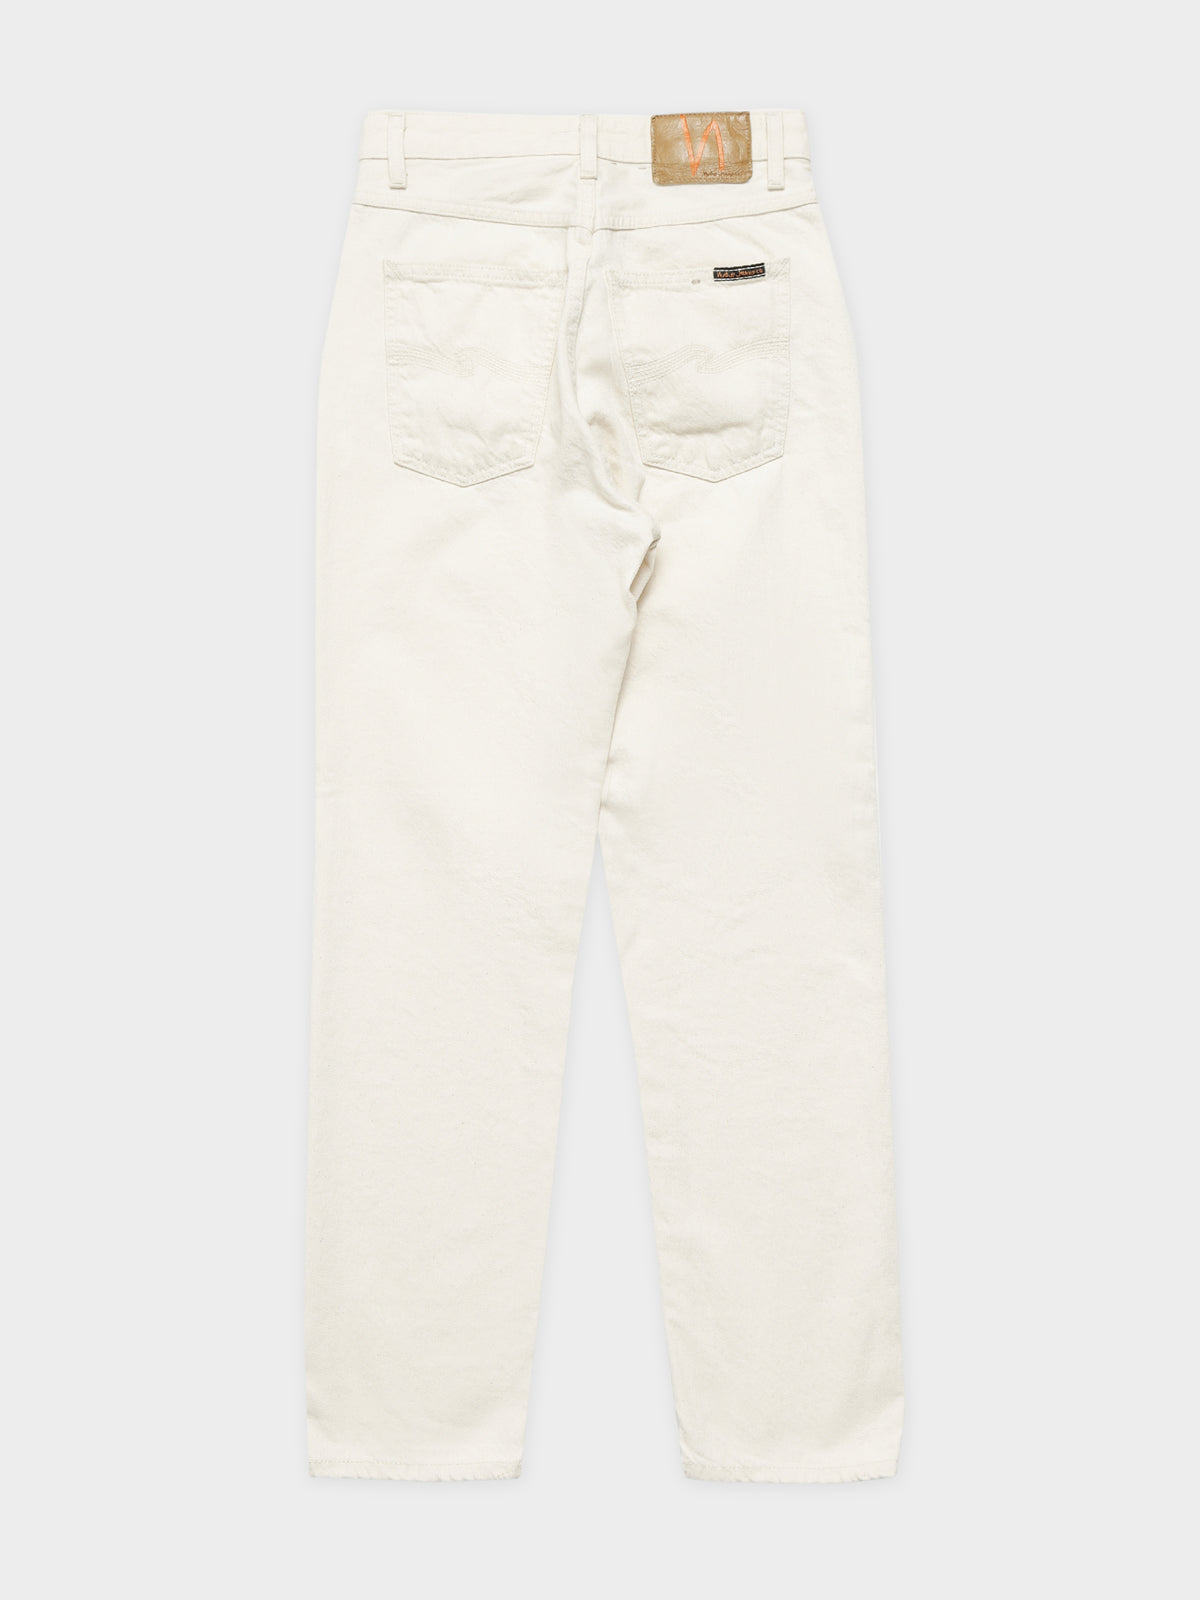 Breezy Britt Slim Jeans in Street Dusty White